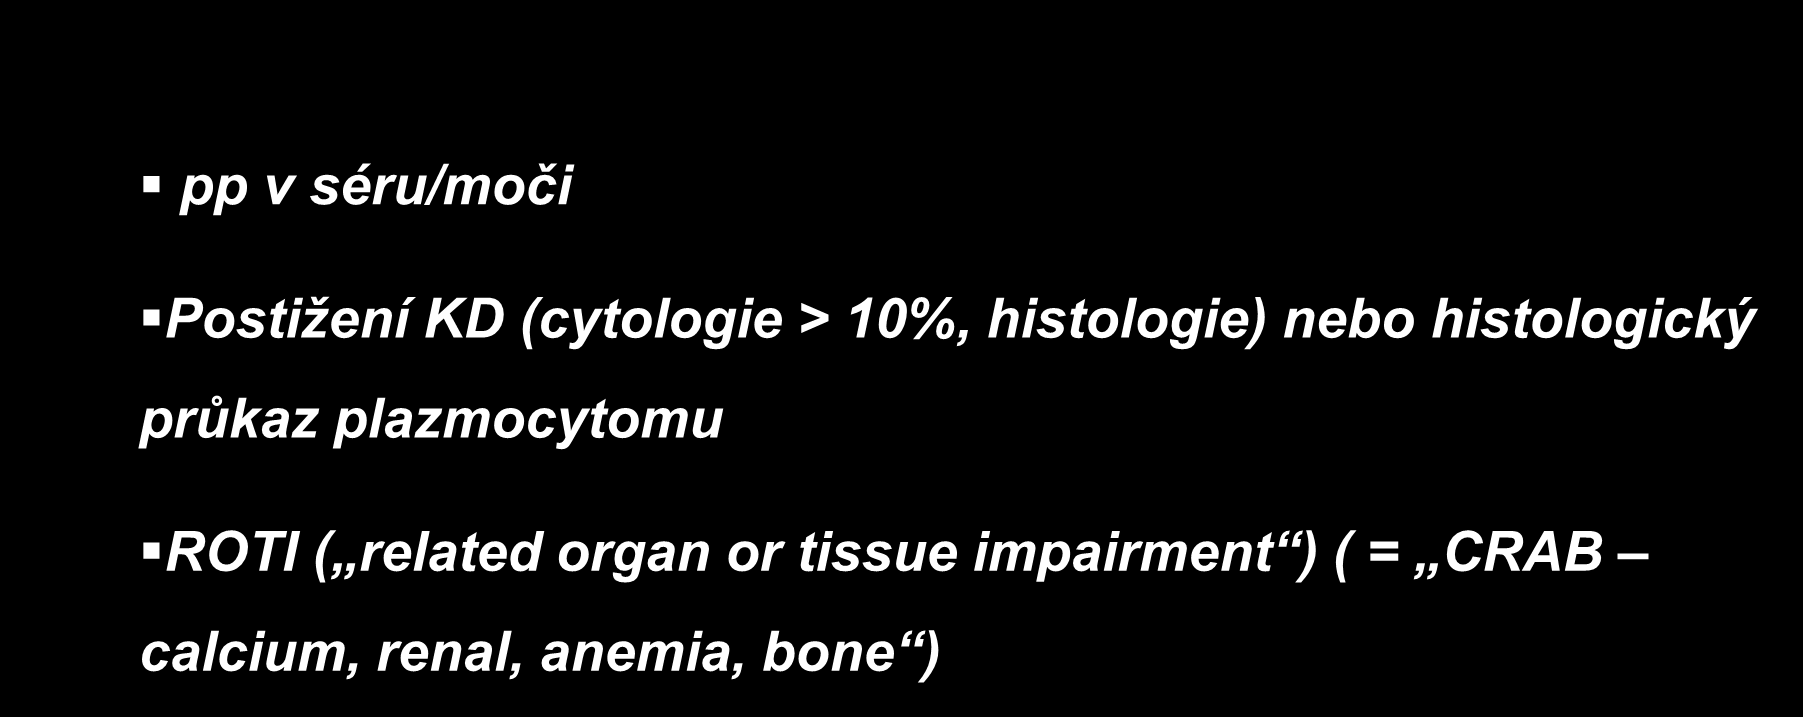 Diagnostická kriteria MM (IMWG 2003) pp v séru/moči Postižení KD (cytologie > 10%, histologie) nebo